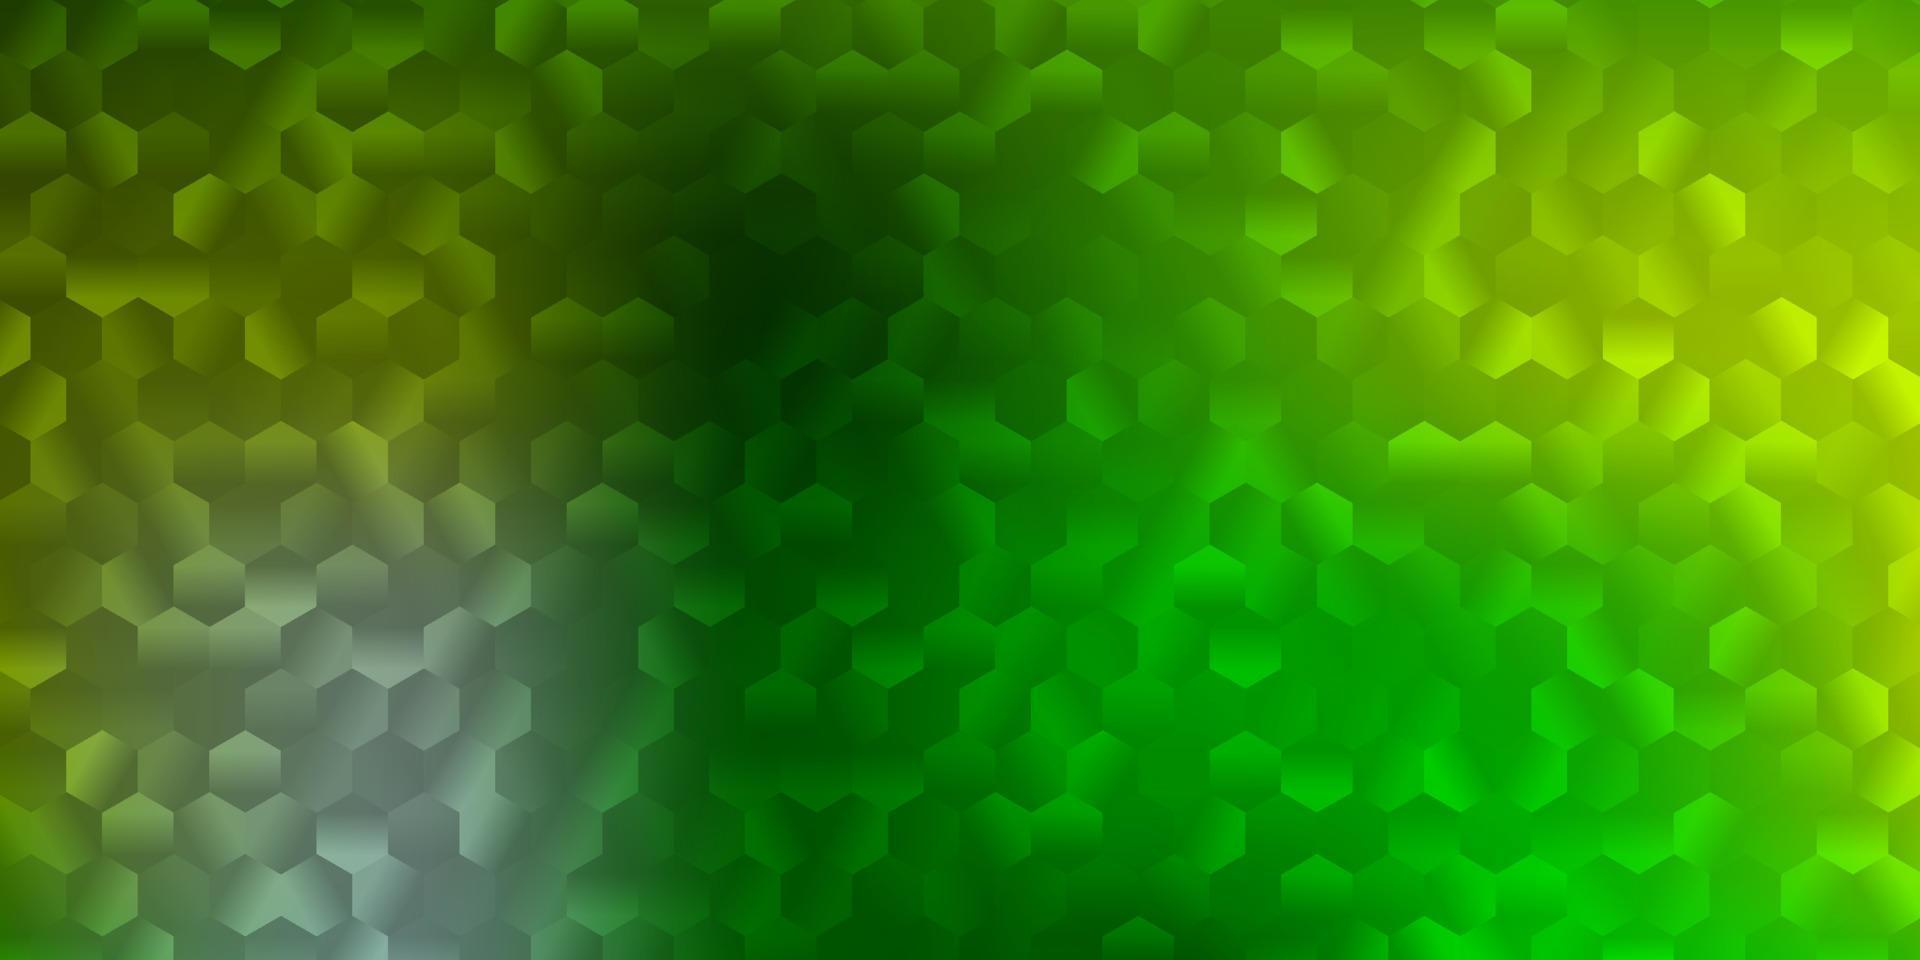 copertina vettoriale verde chiaro, gialla con esagoni semplici.